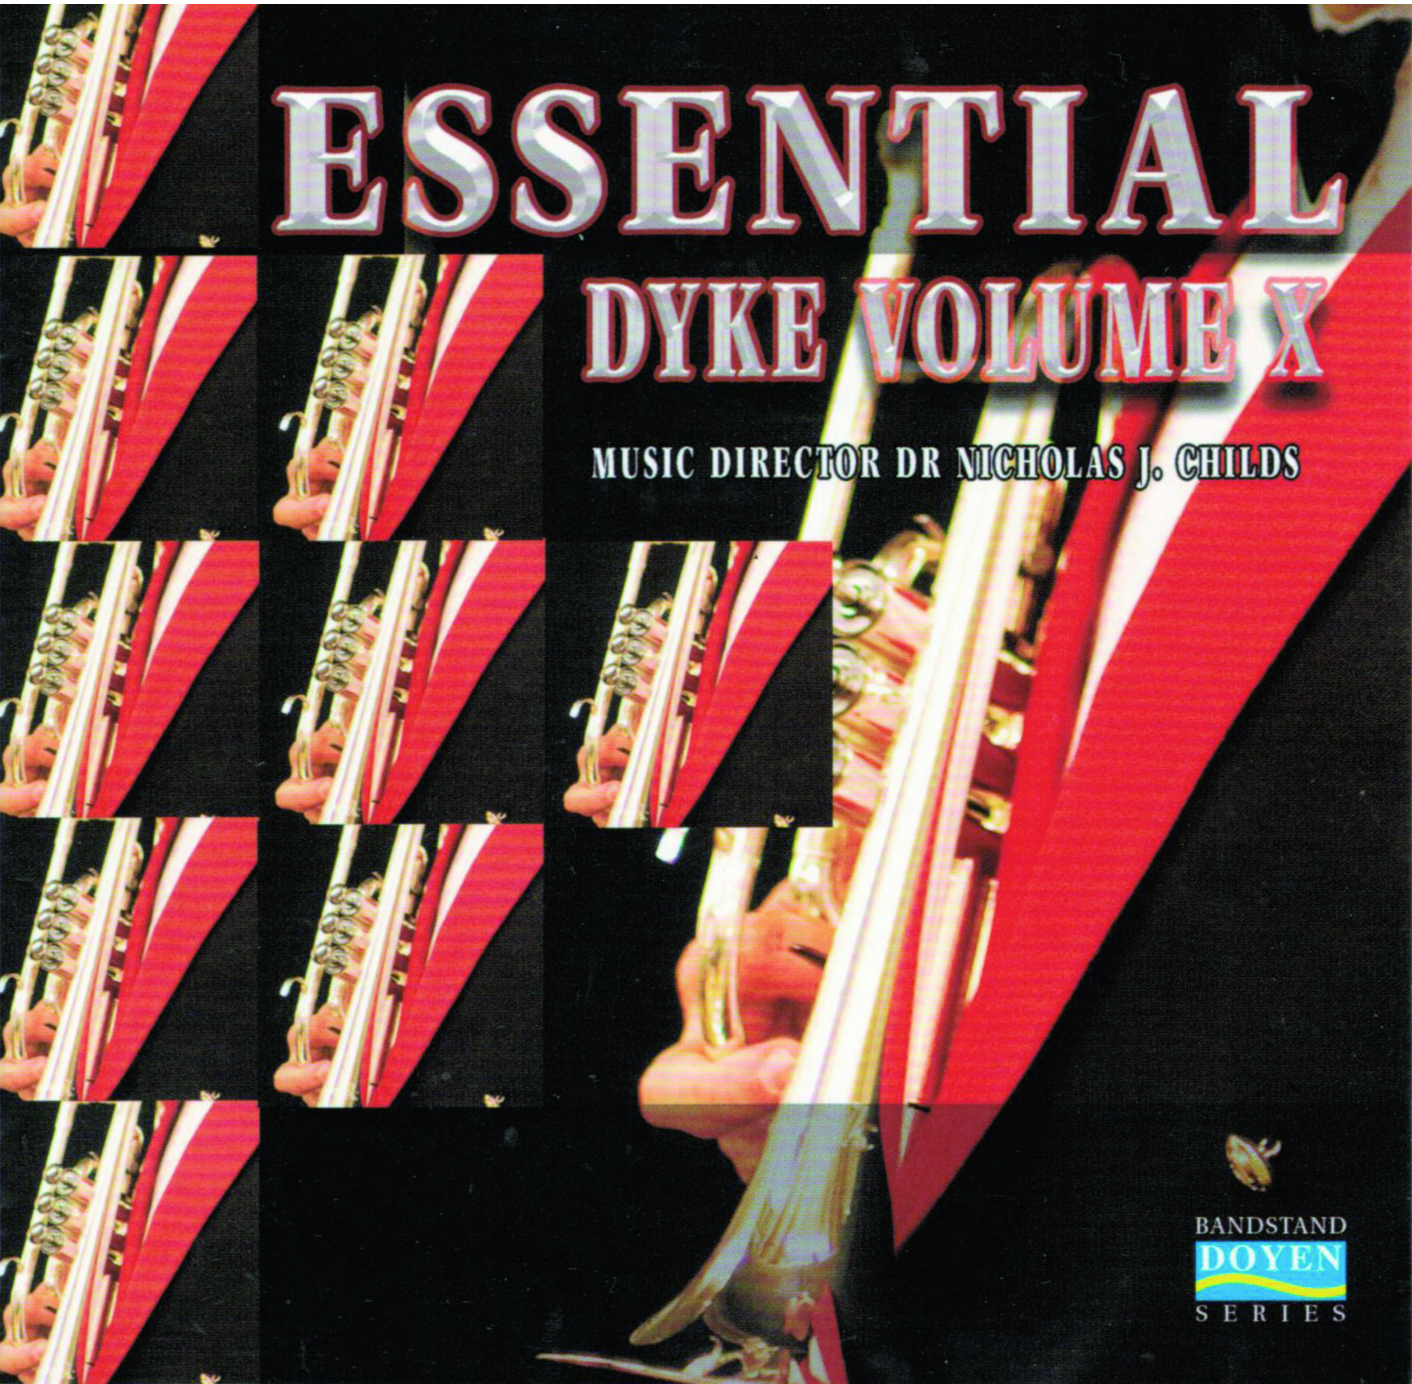 Essential Dyke Vol. X - Download